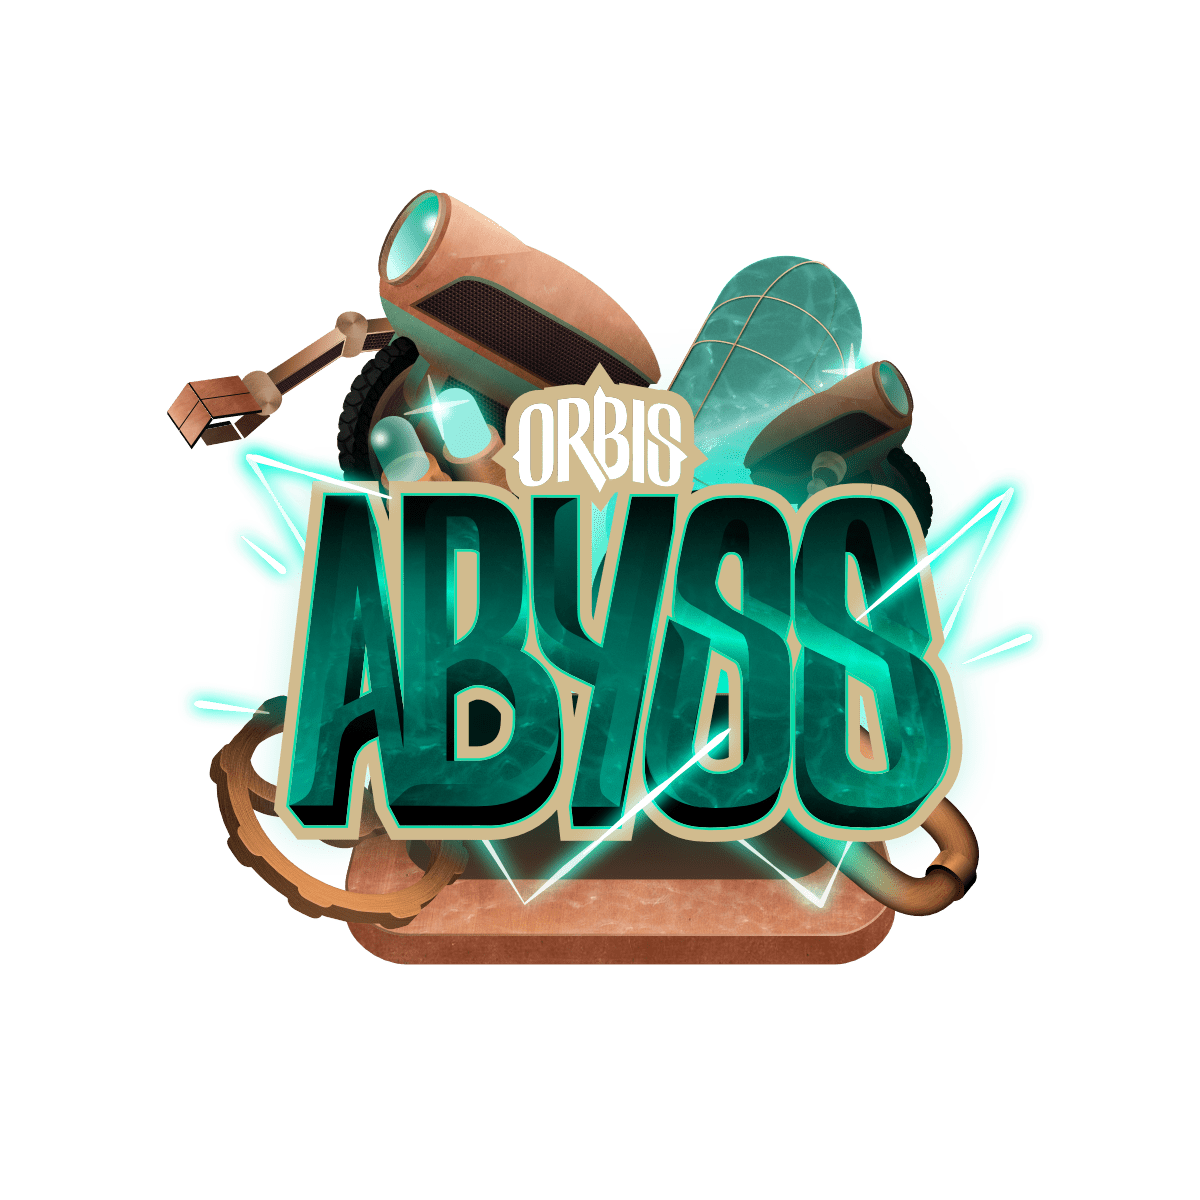 Absyss